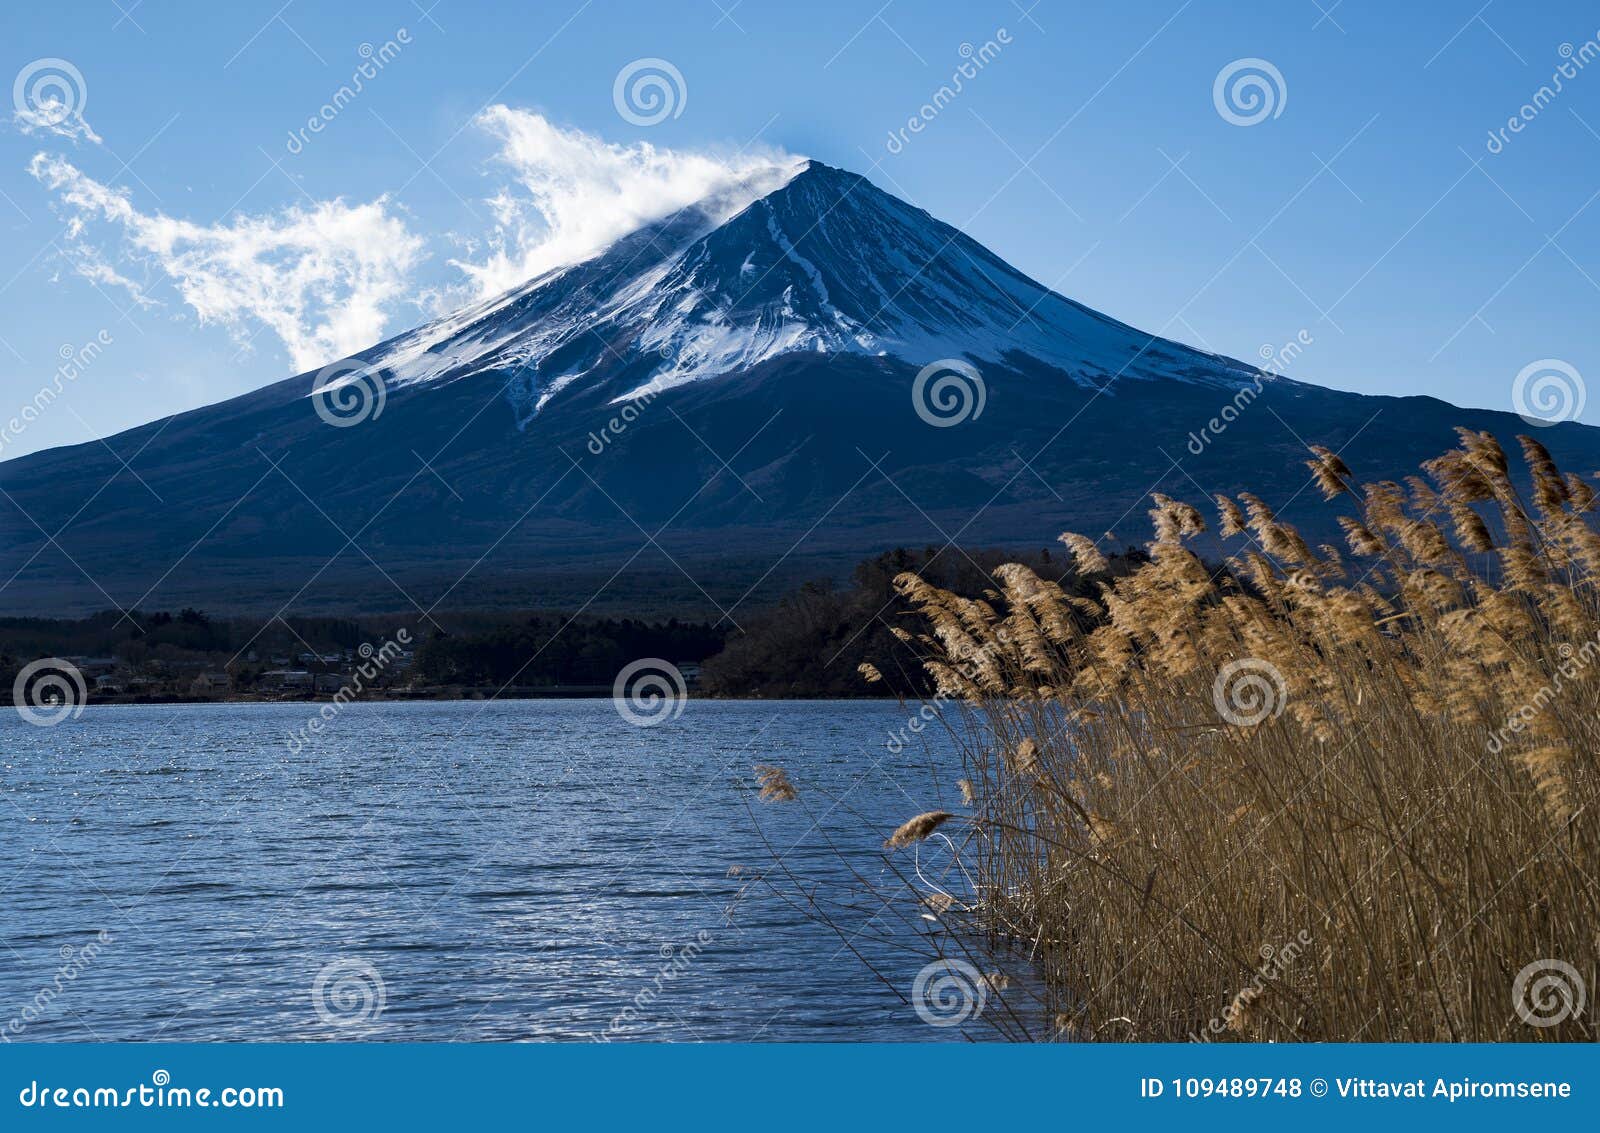 Zummi il supporto Fujit con priorità alta del lago e dell'erba lunga. Il monte Fuji nell'inverno con priorità alta del lago e dell'erba lunga